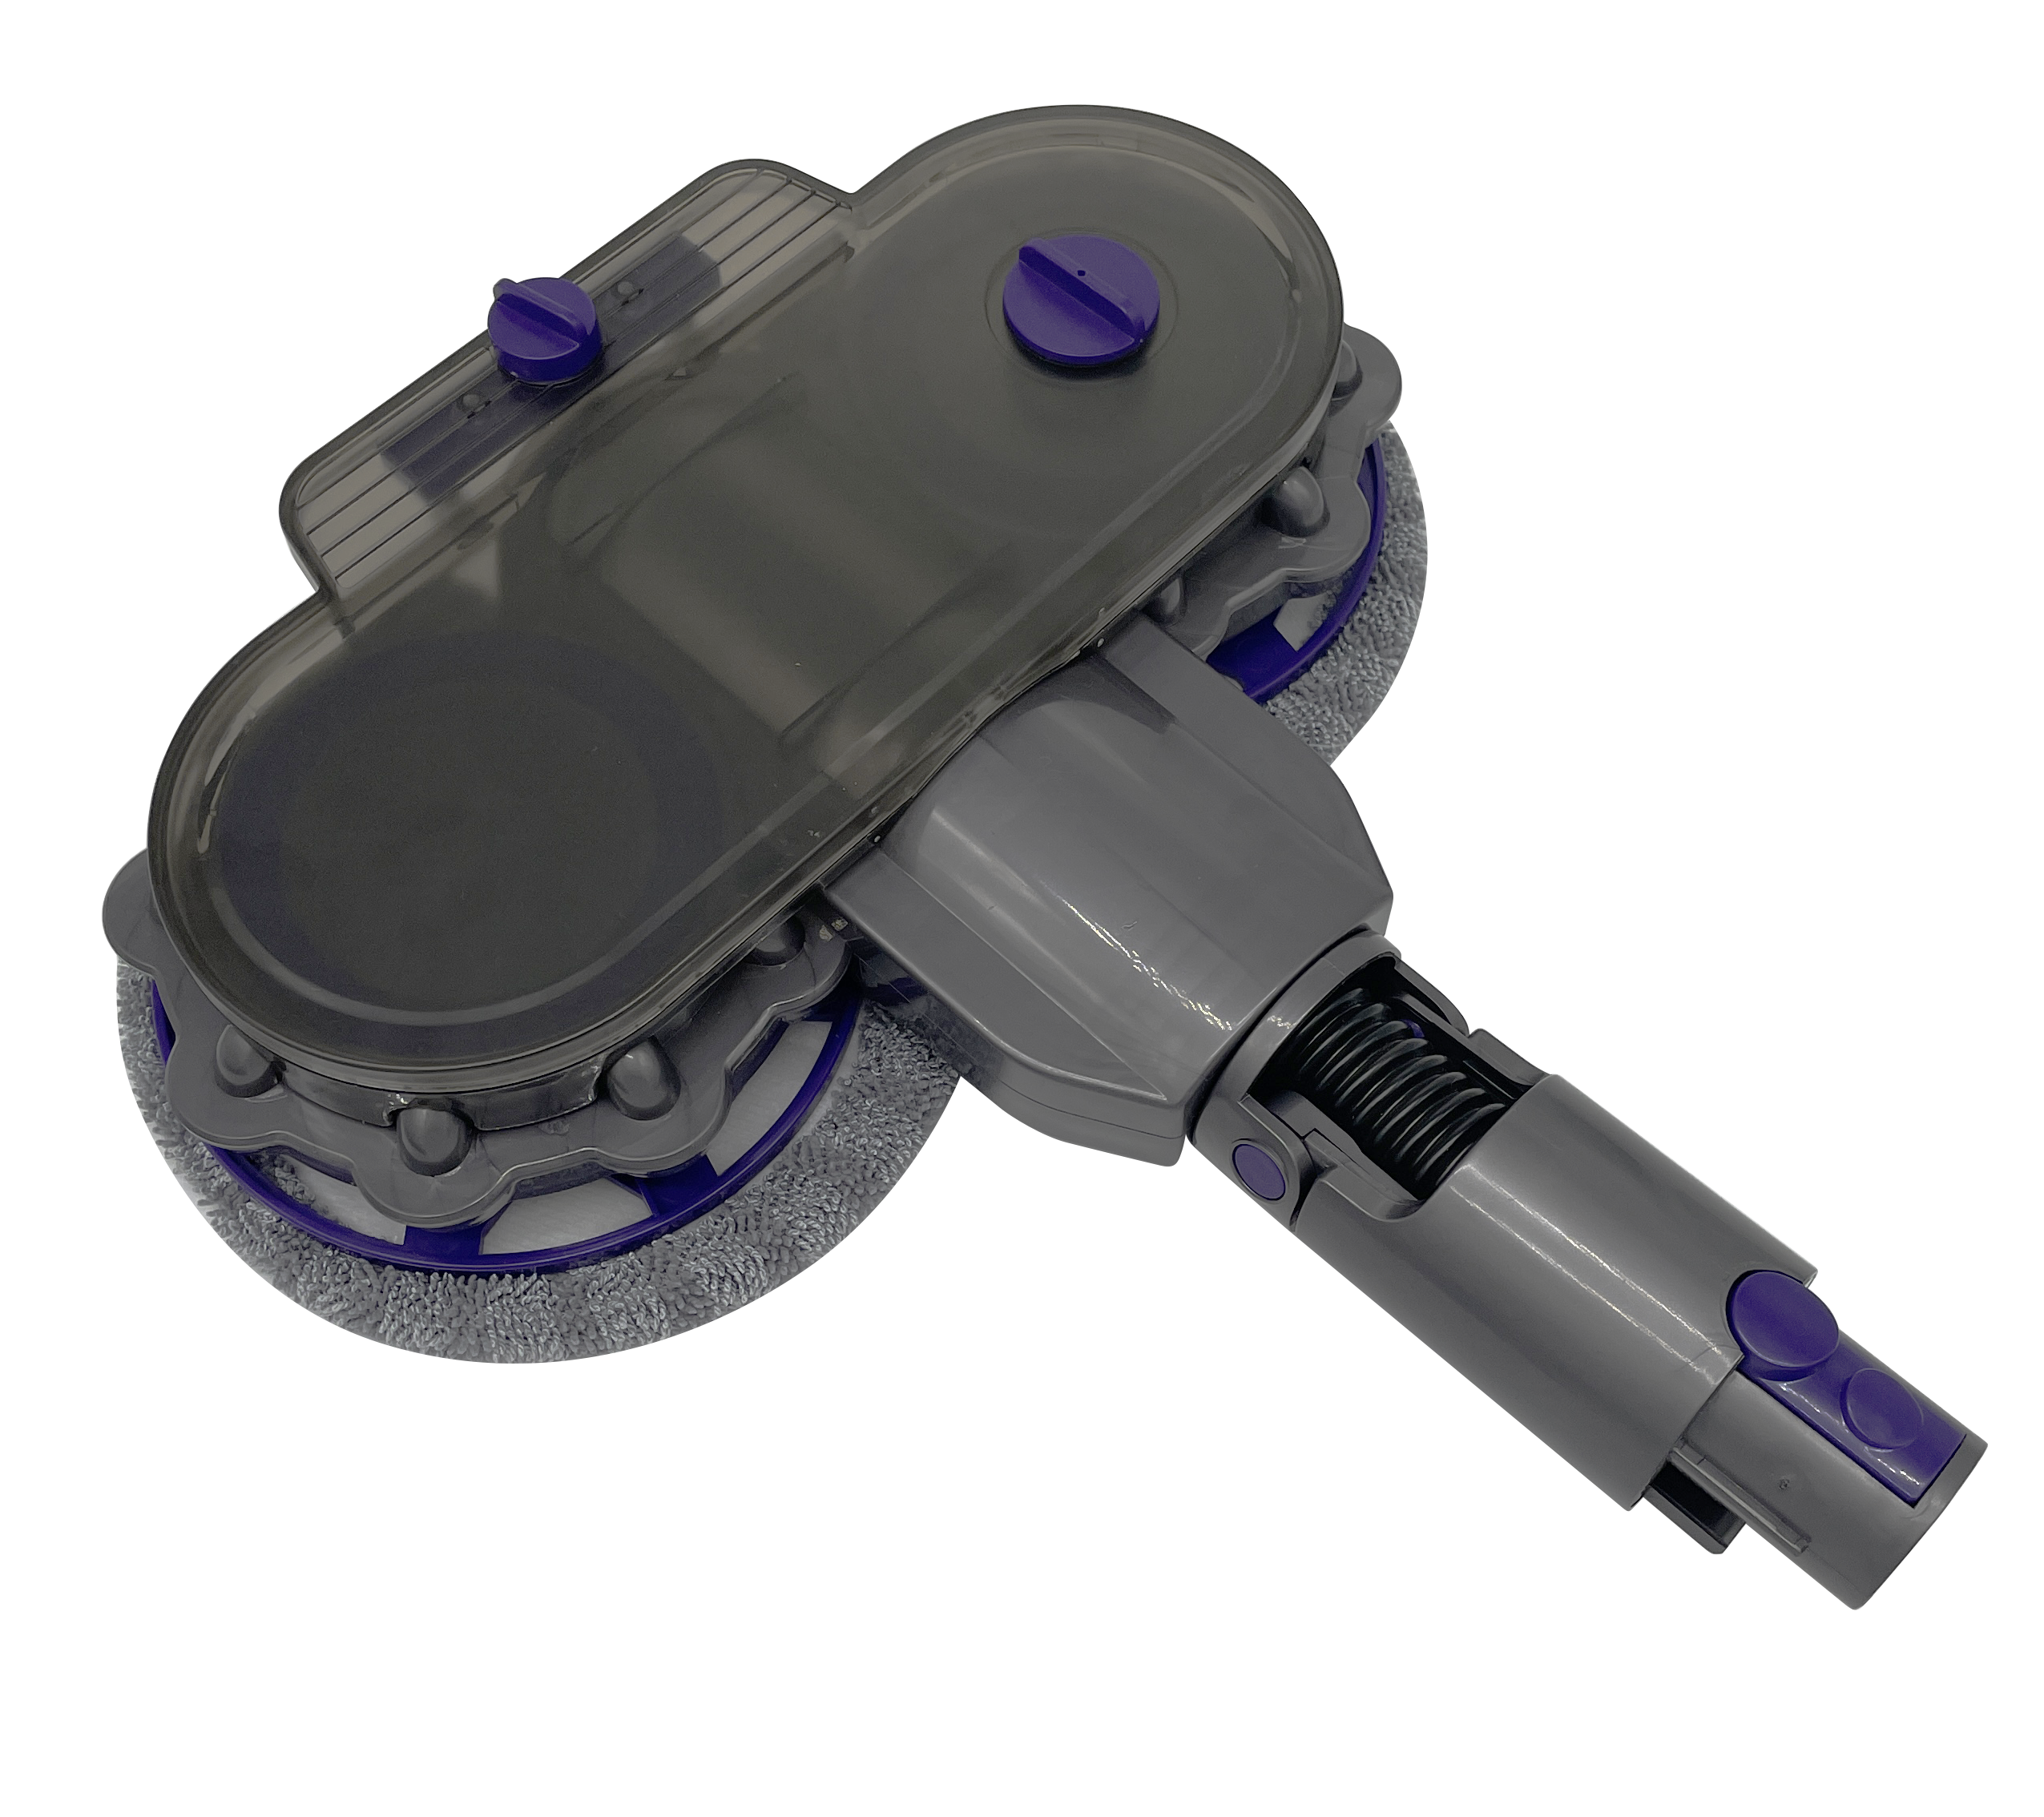 デュアルスピンモップヘッドブラシ 水容器付き ダイソン V7 V8 V10 V11 掃除機アタッチメントに対応